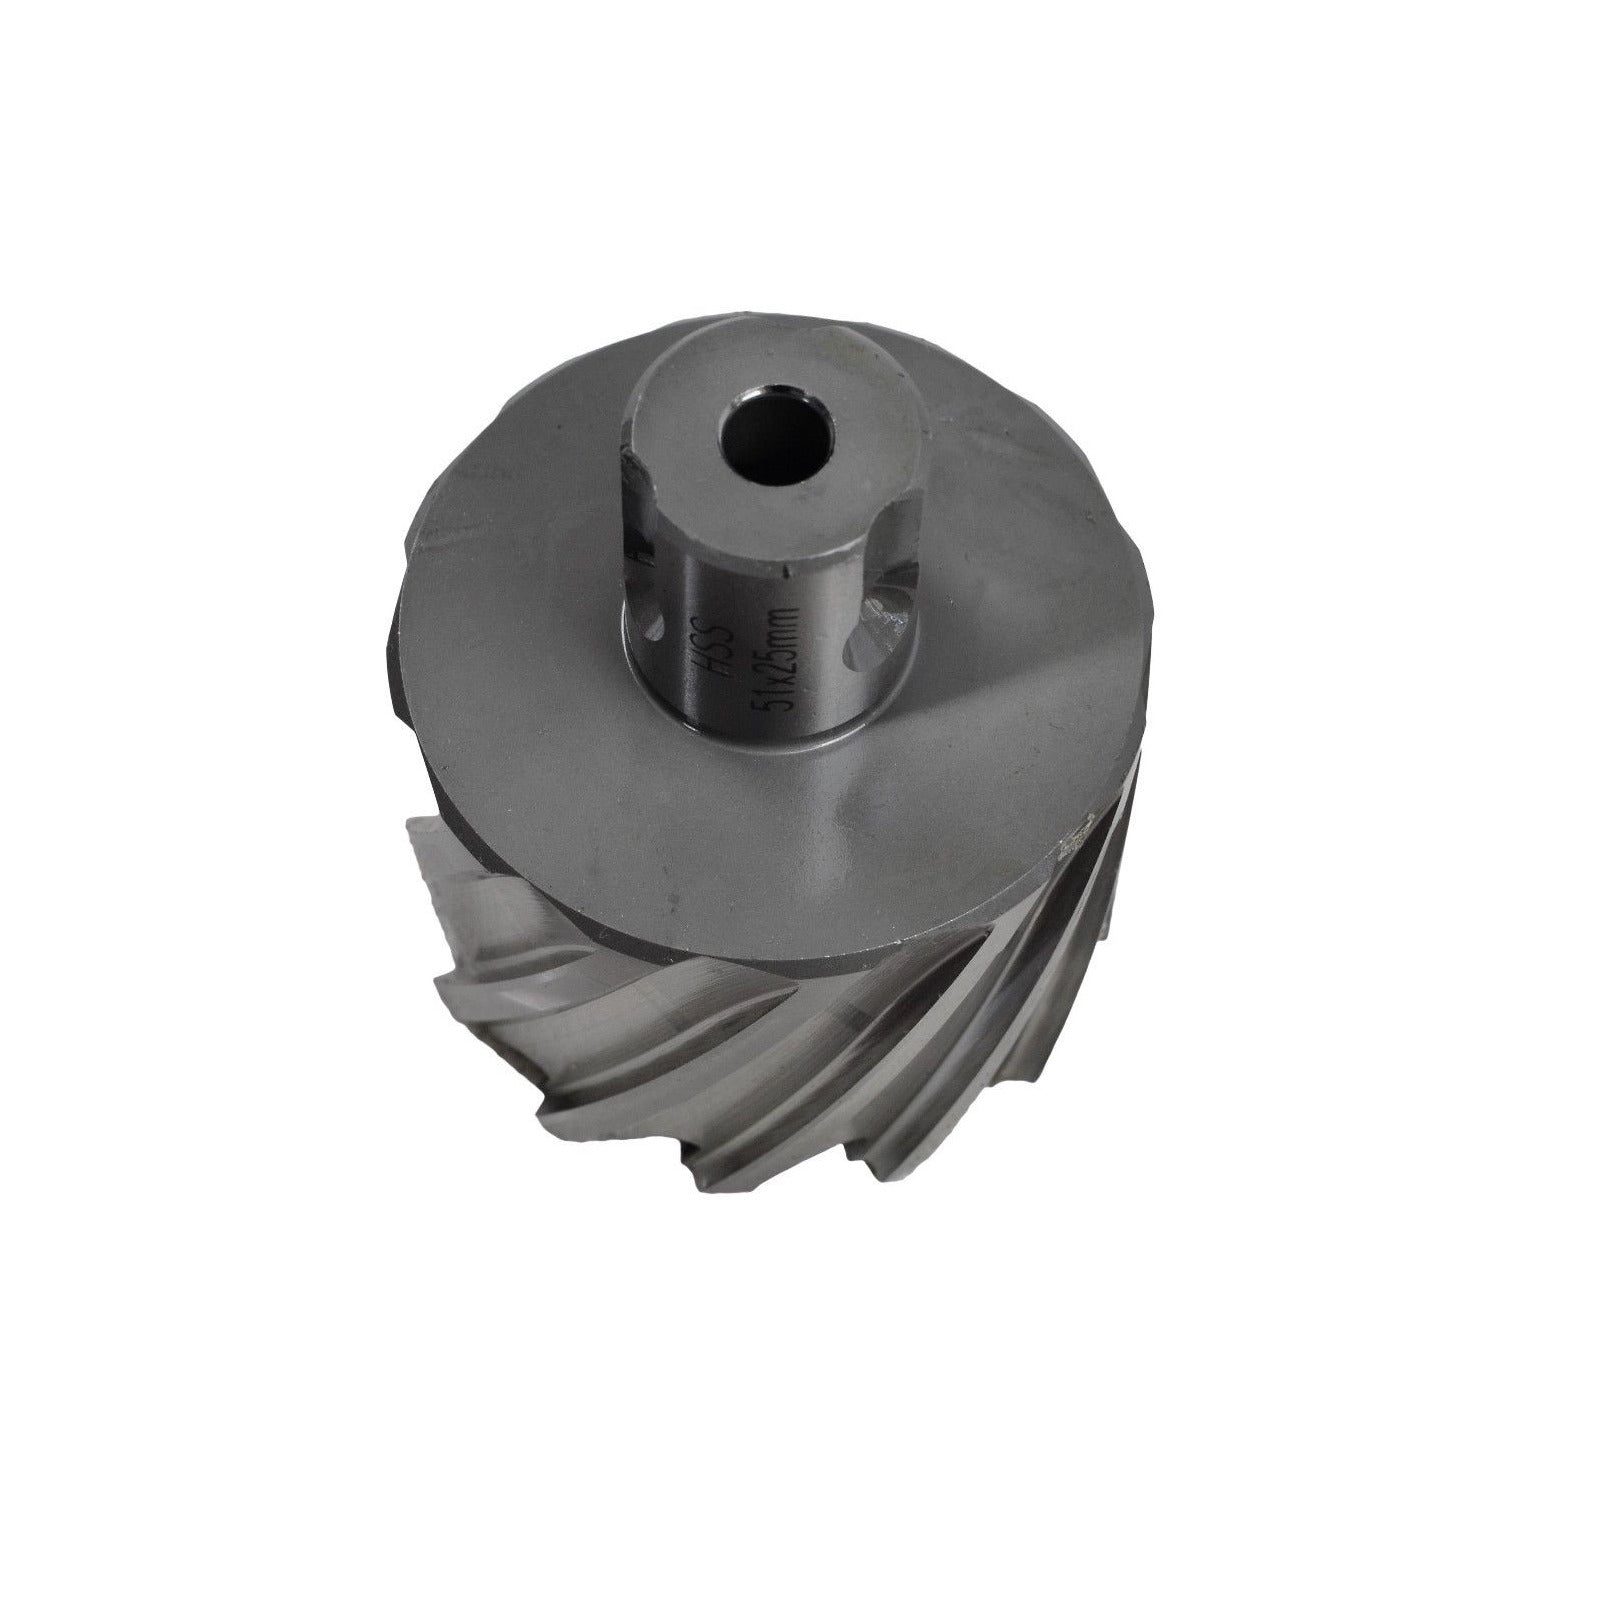 51 x 25mm HSS Annular Cutter Broach Cutter ; Rotabroach Magnetic Drill ; Universal Shank